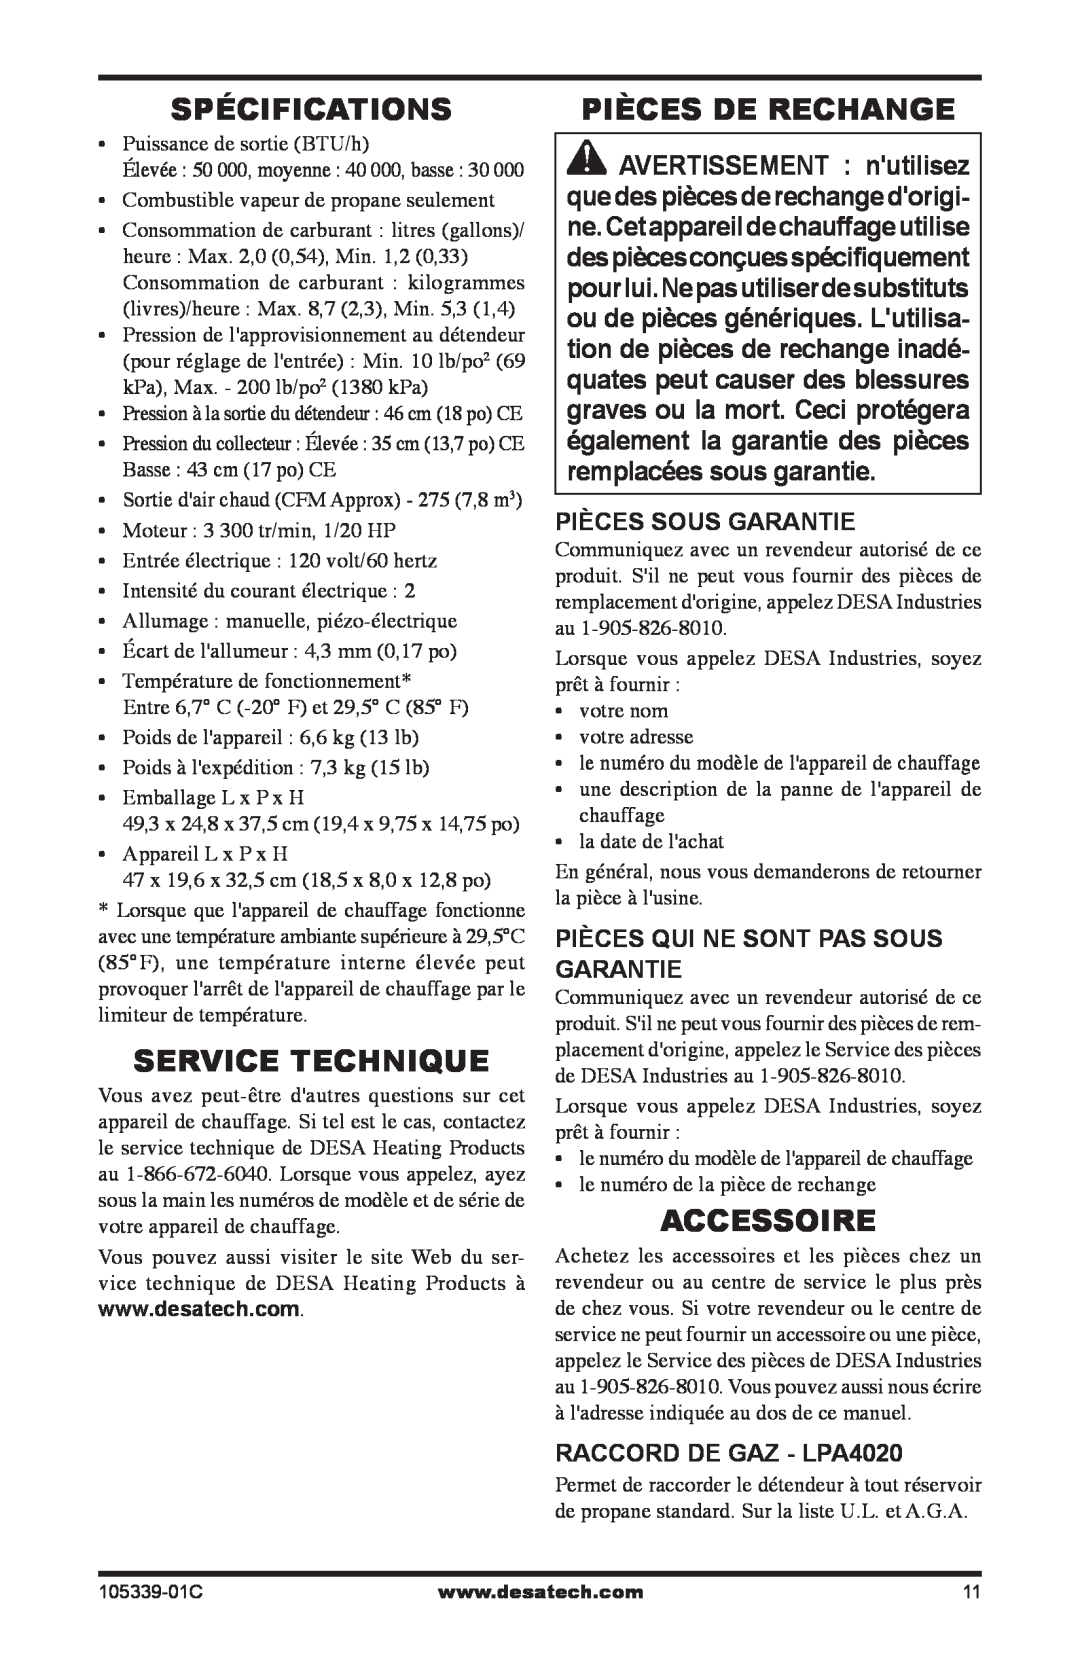 Desa RCLP50-F owner manual Spécifications, Service Technique, Pièces De Rechange, Accessoire, Pièces Sous Garantie 